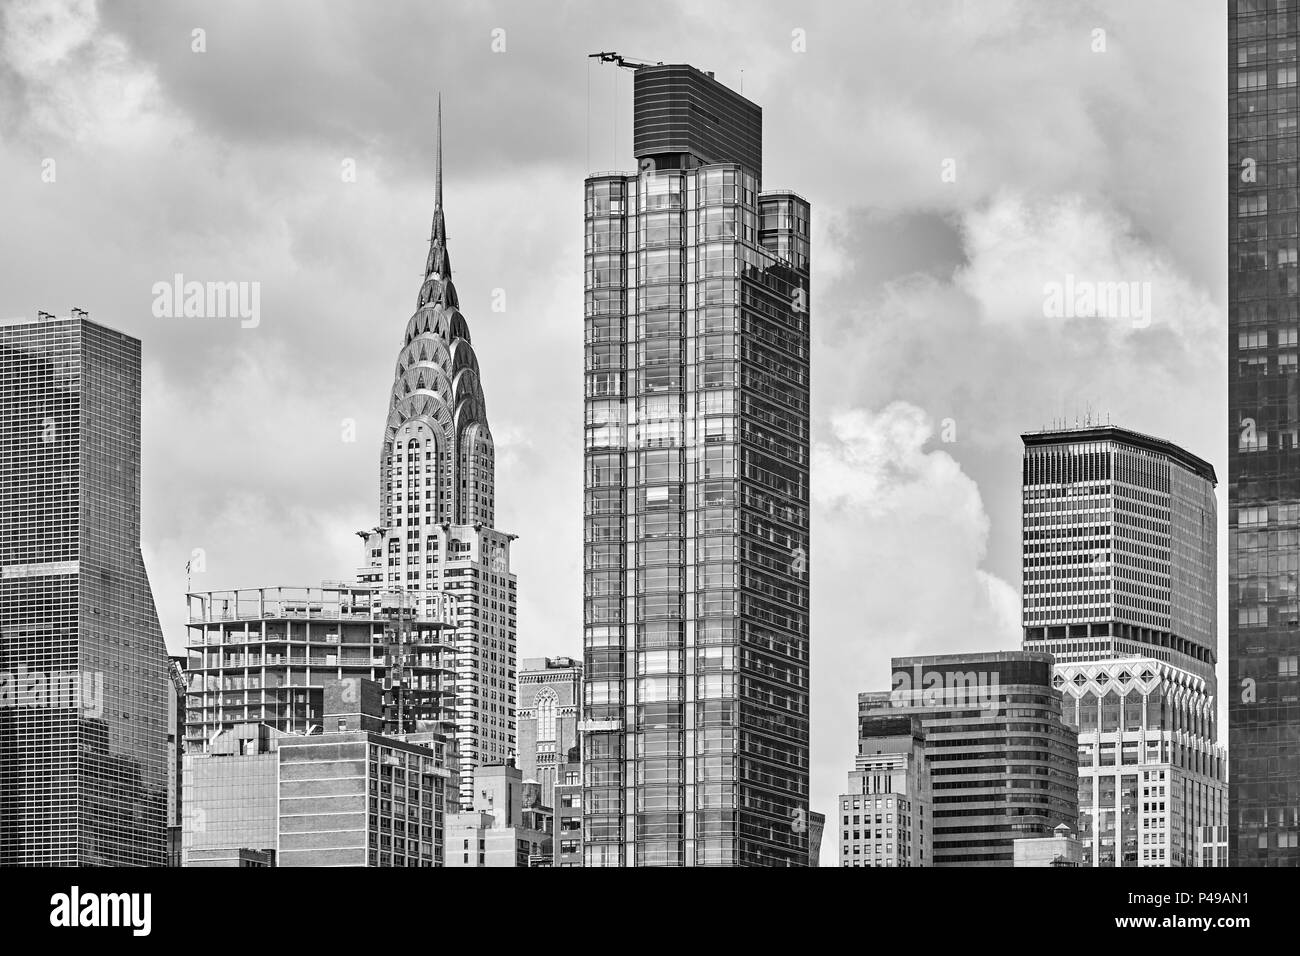 Photo noir et blanc de l'architecture de la ville de New York, USA. Banque D'Images